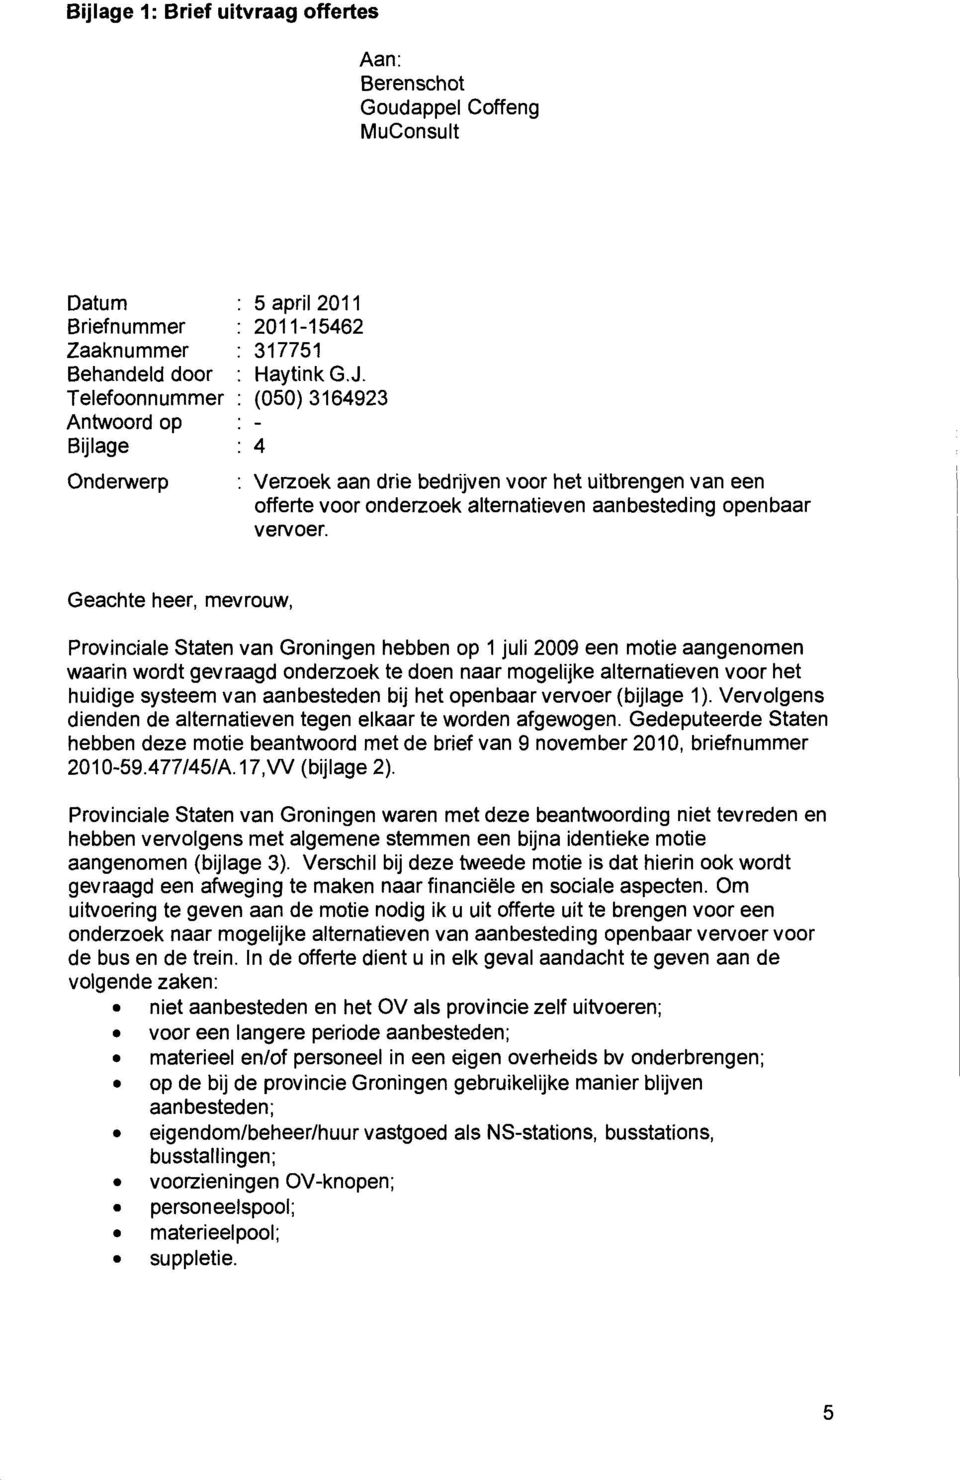 Provinciale Staten van Groningen hebben op 1 juli 2009 een motie aangenomen waarin wordt gevraagd onderzoek te doen naar mogelijke alternatieven voor het huidige systeem van aanbesteden bij het